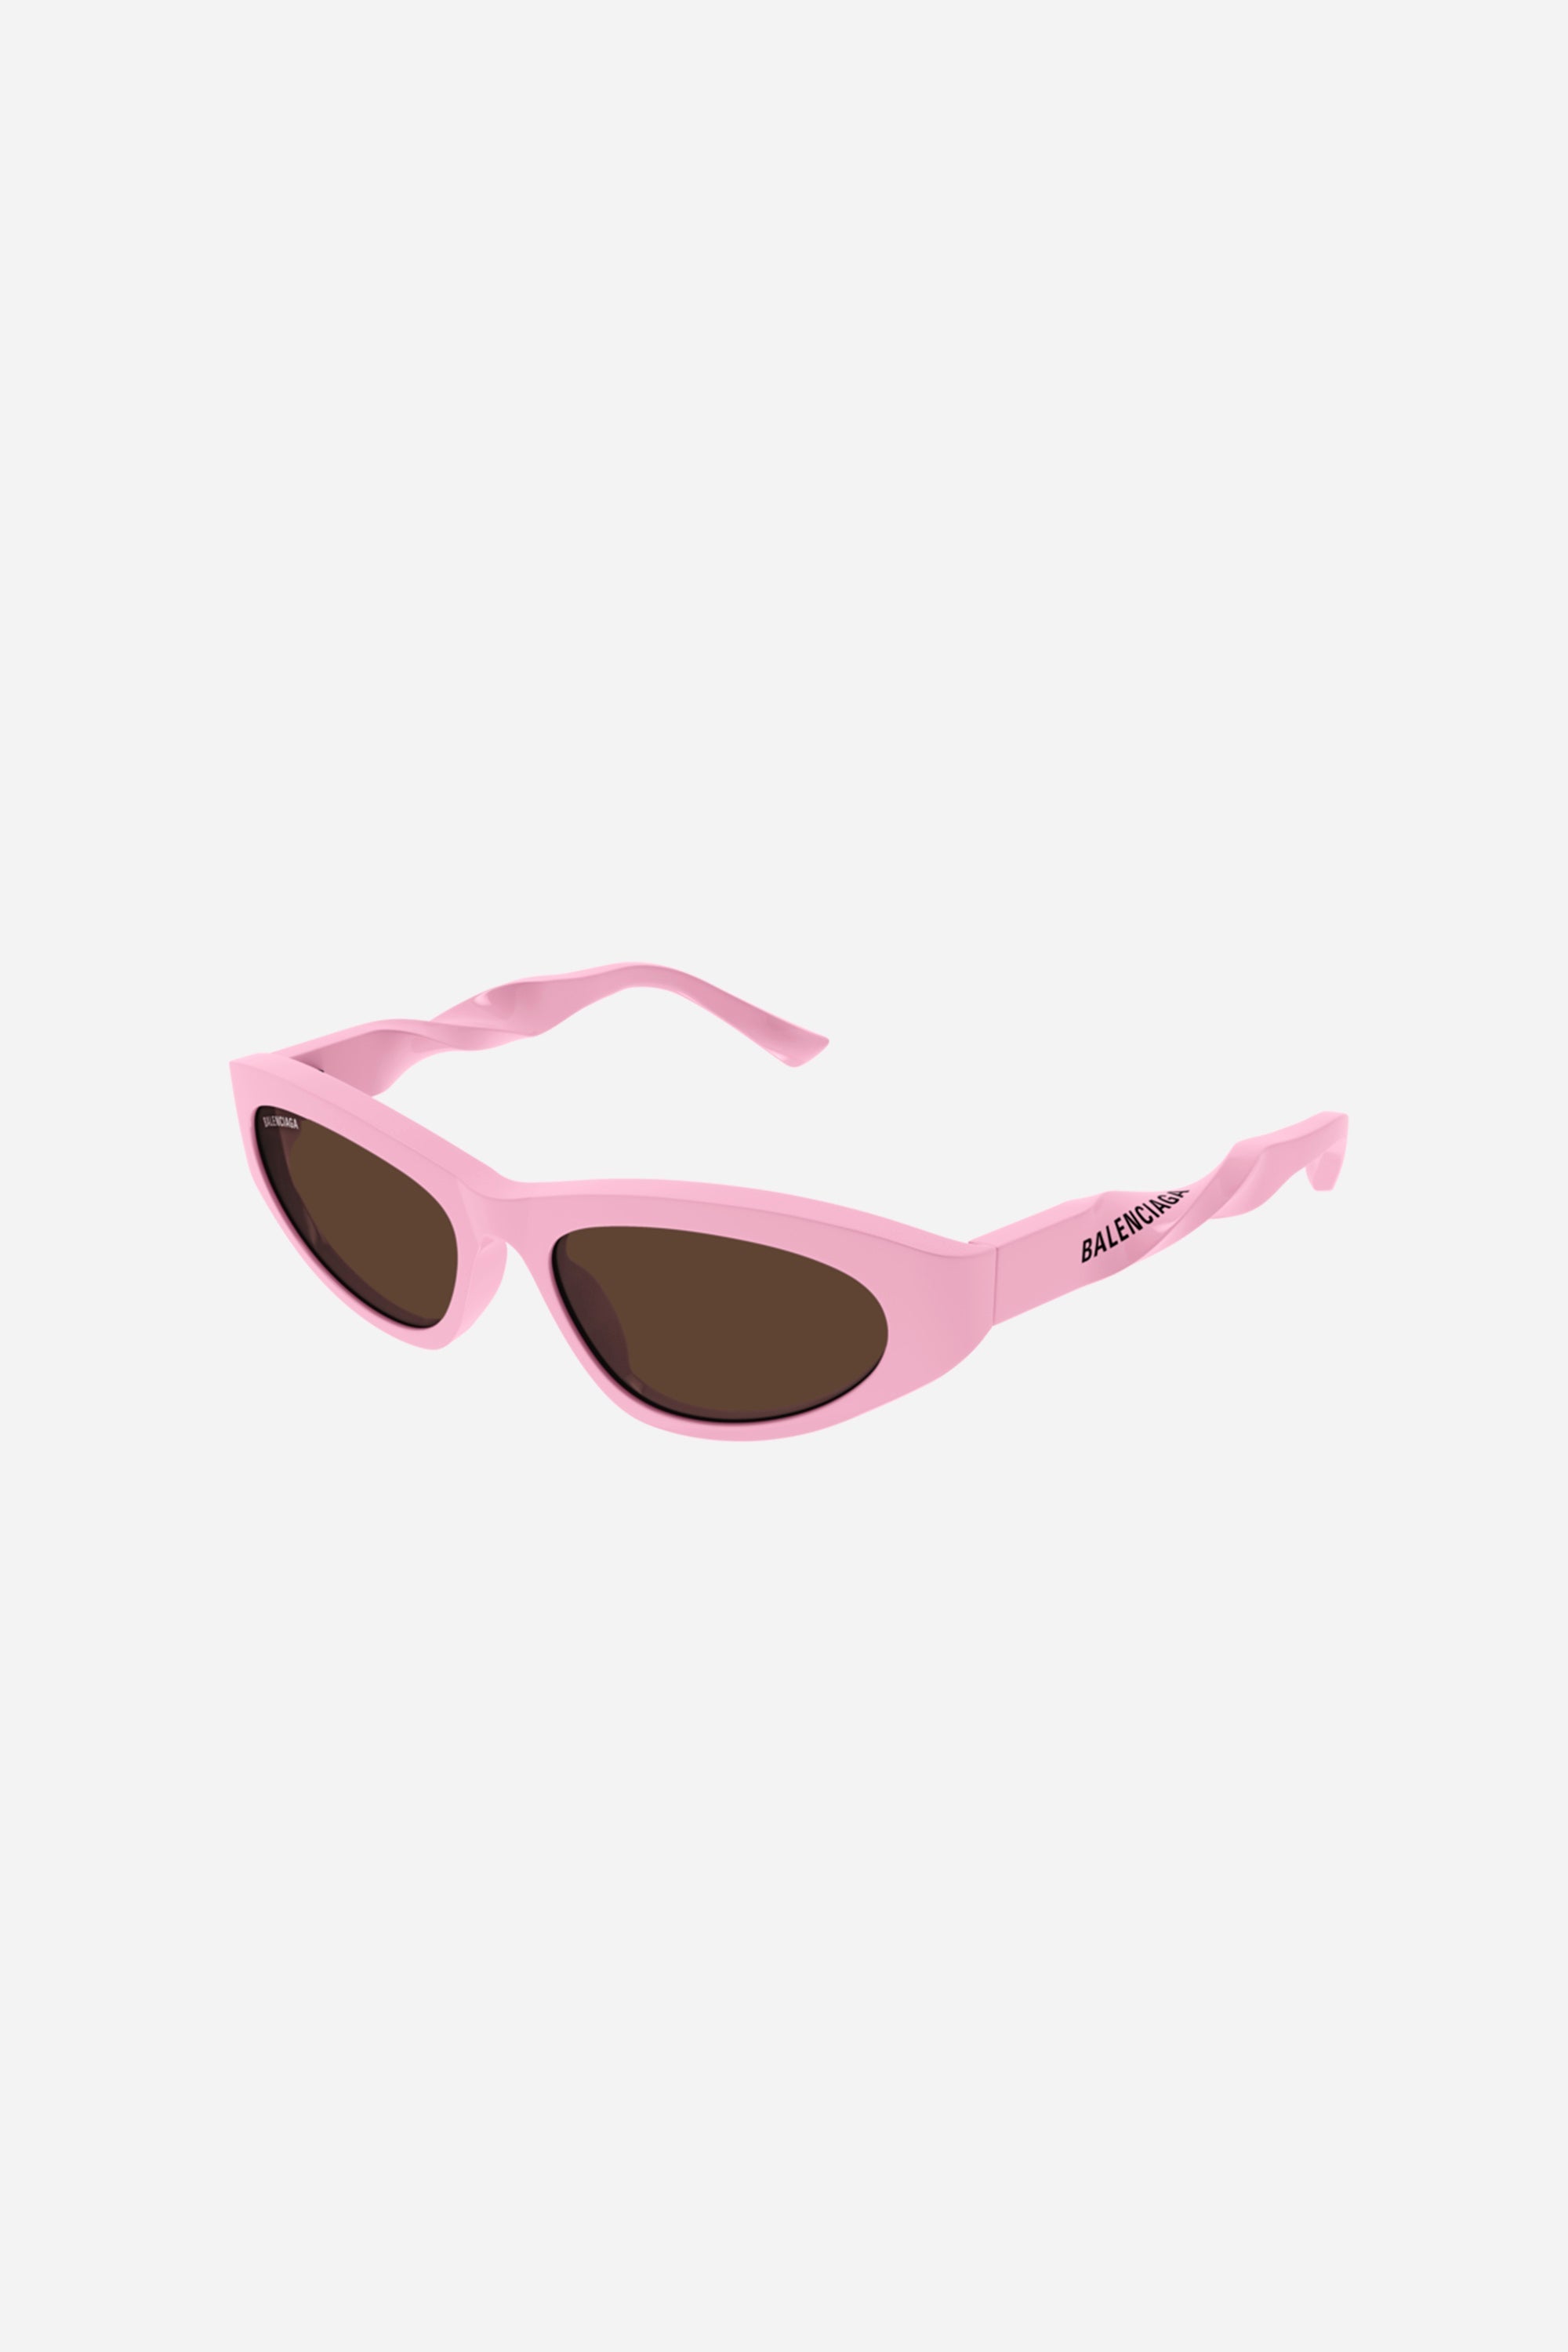 Balenciaga baby pink twist cat eye sunglasses - Eyewear Club